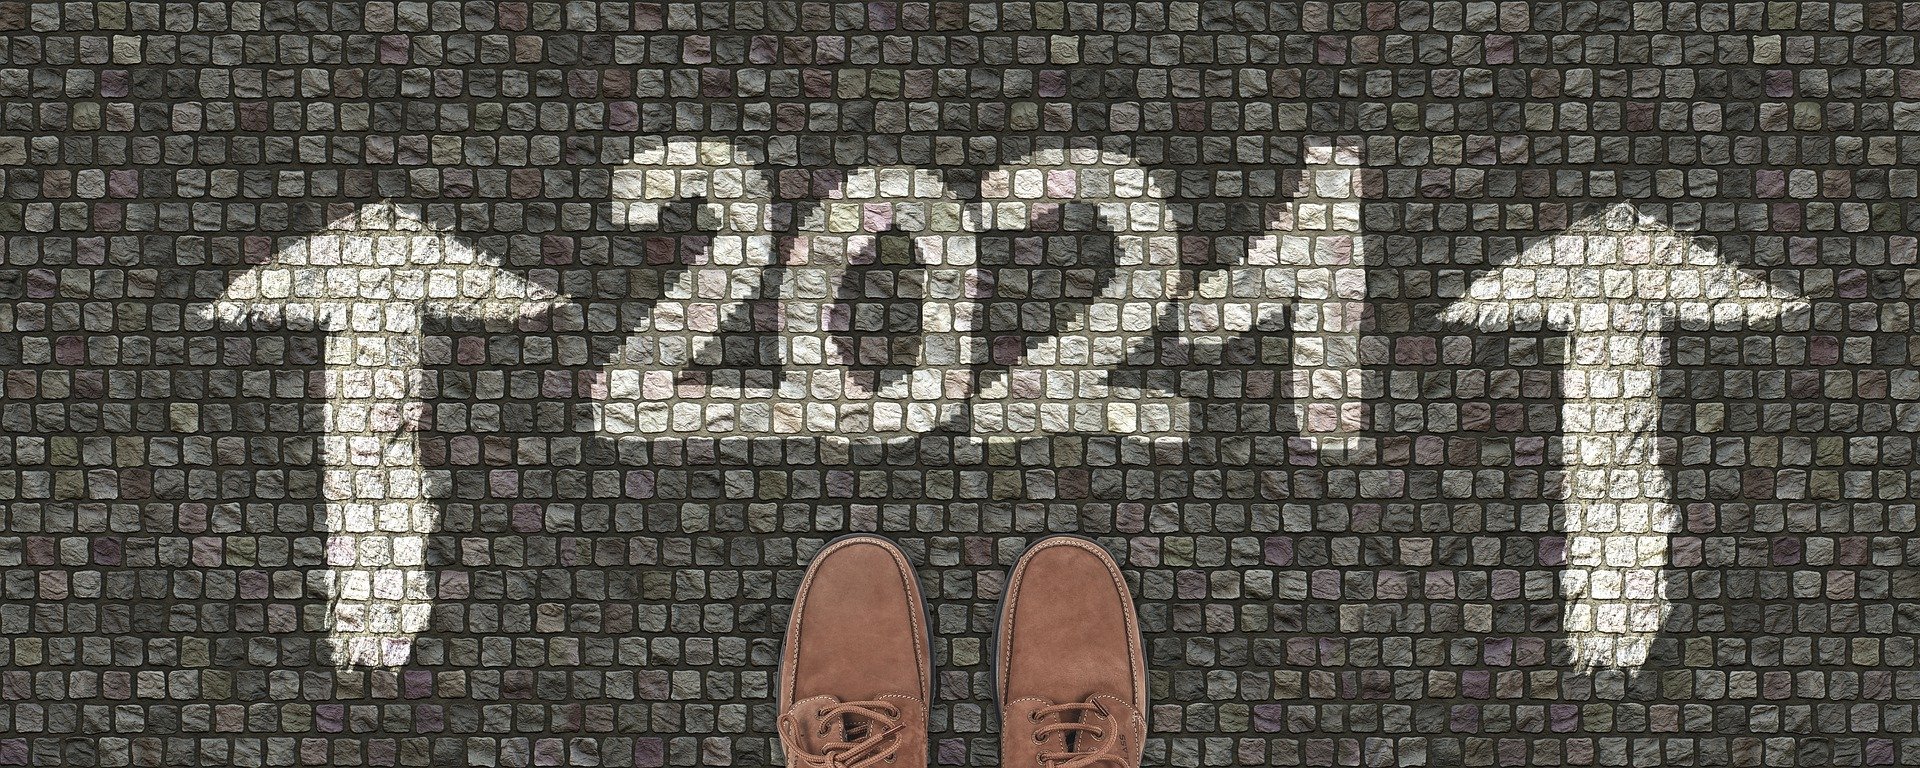 2021 01